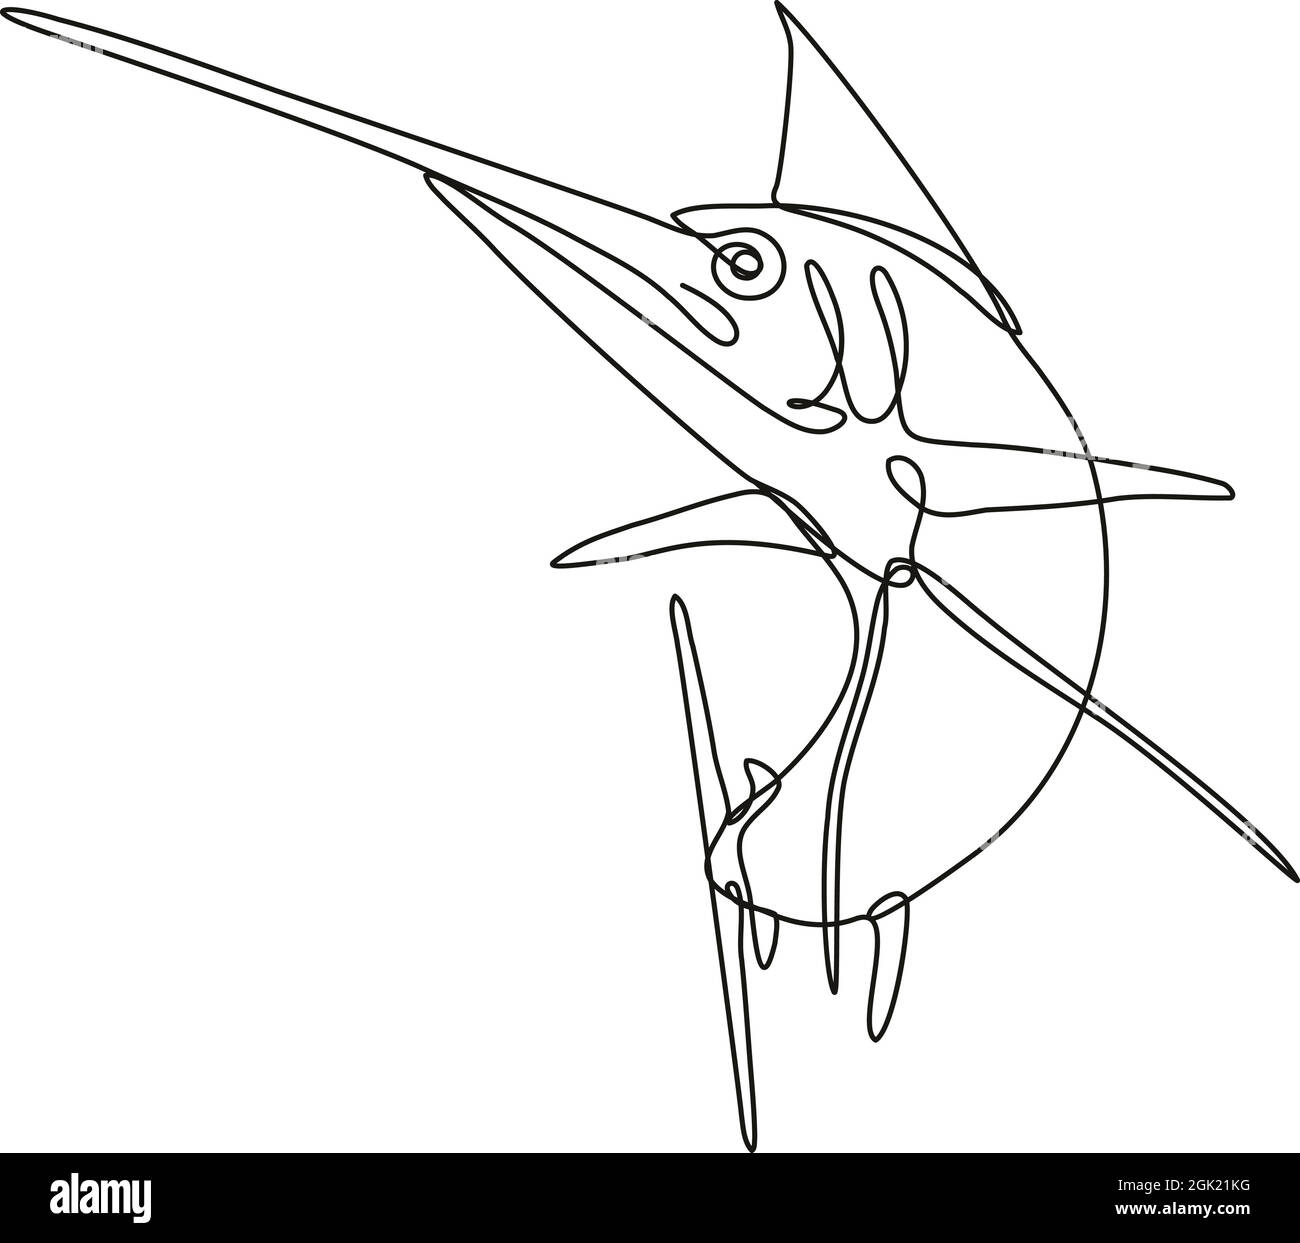 Ilustración continua de dibujo de una aguja azul del Atlántico enojada saltando en línea mono o estilo fideos en blanco y negro en espalda aislada Ilustración del Vector